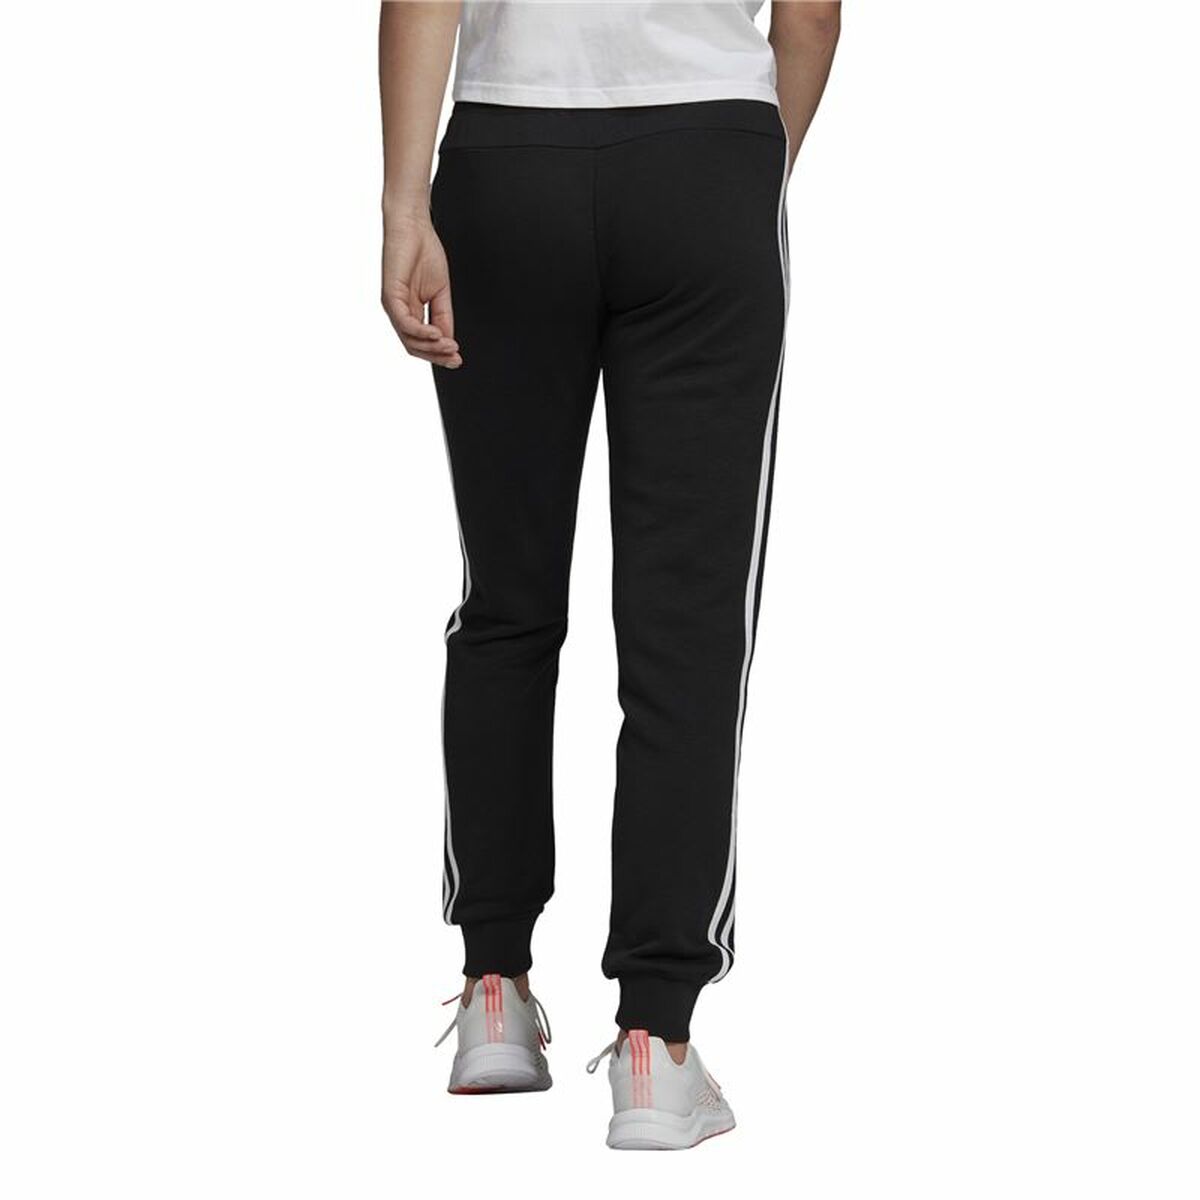 Длинные спортивные штаны Adidas Essentials French Terry 3 Stripes Женщина Чёрный